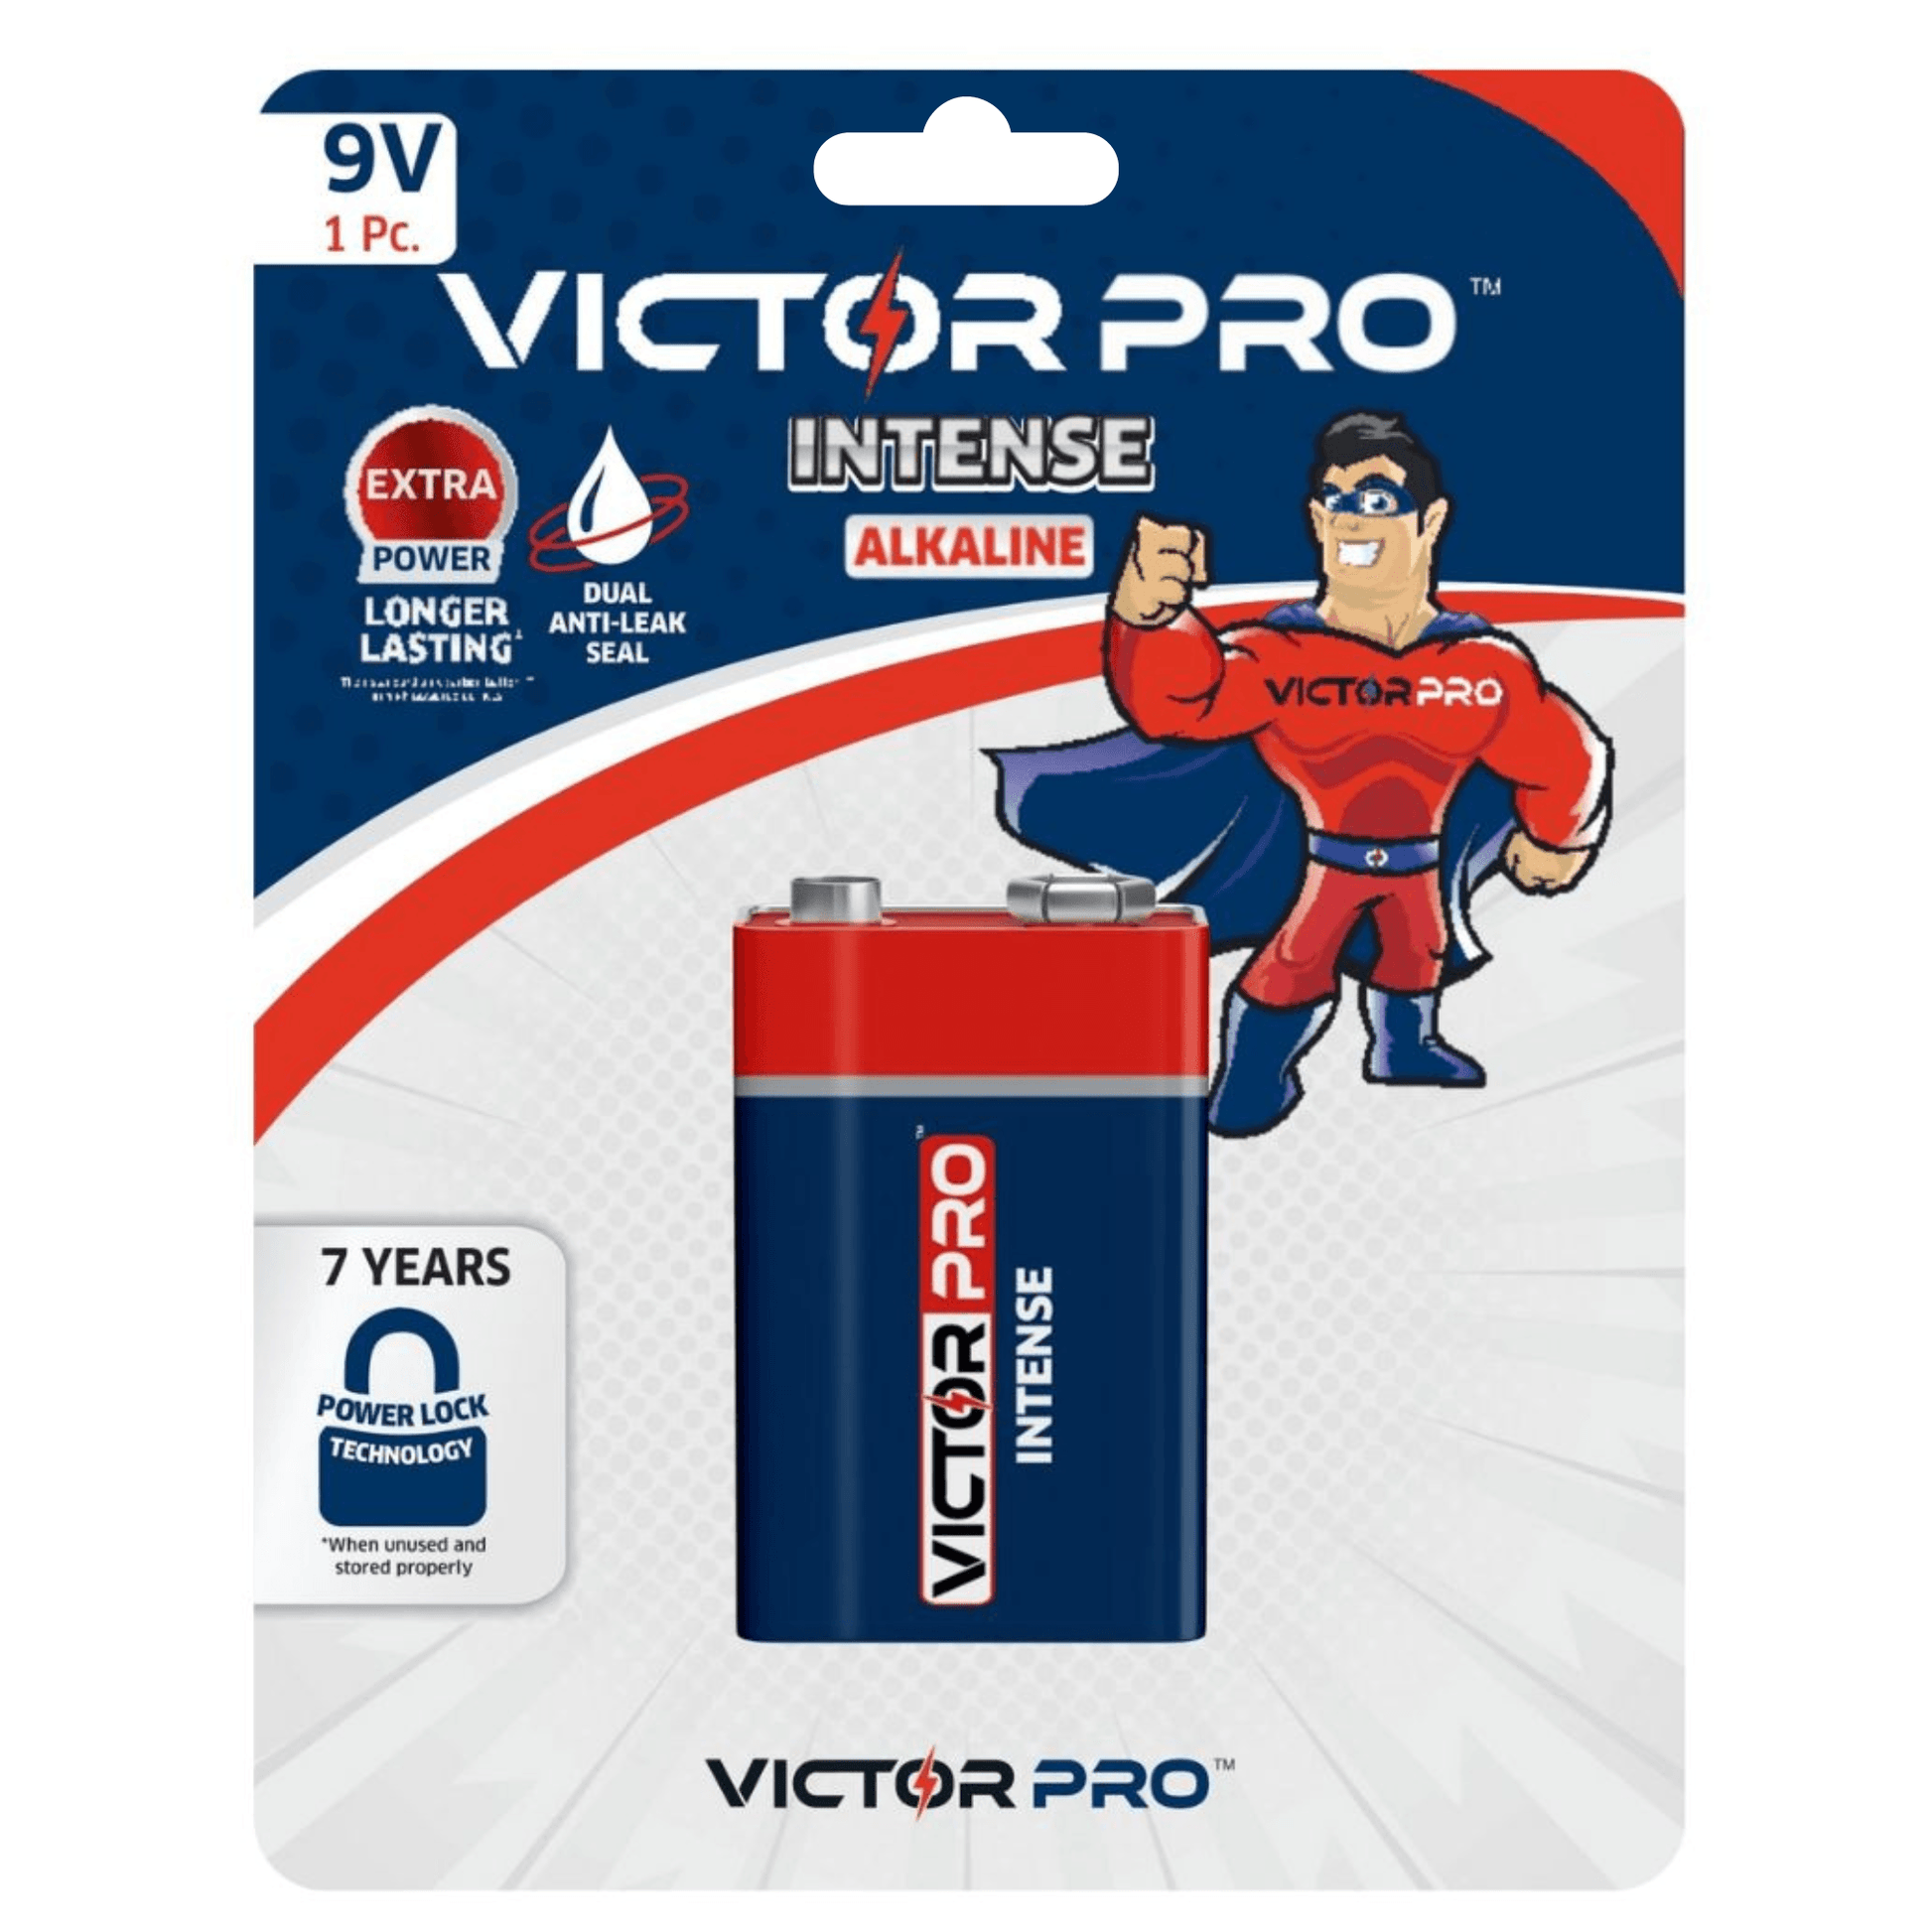 VictorPro Intense 9V Alkaline Battery - VictorPro